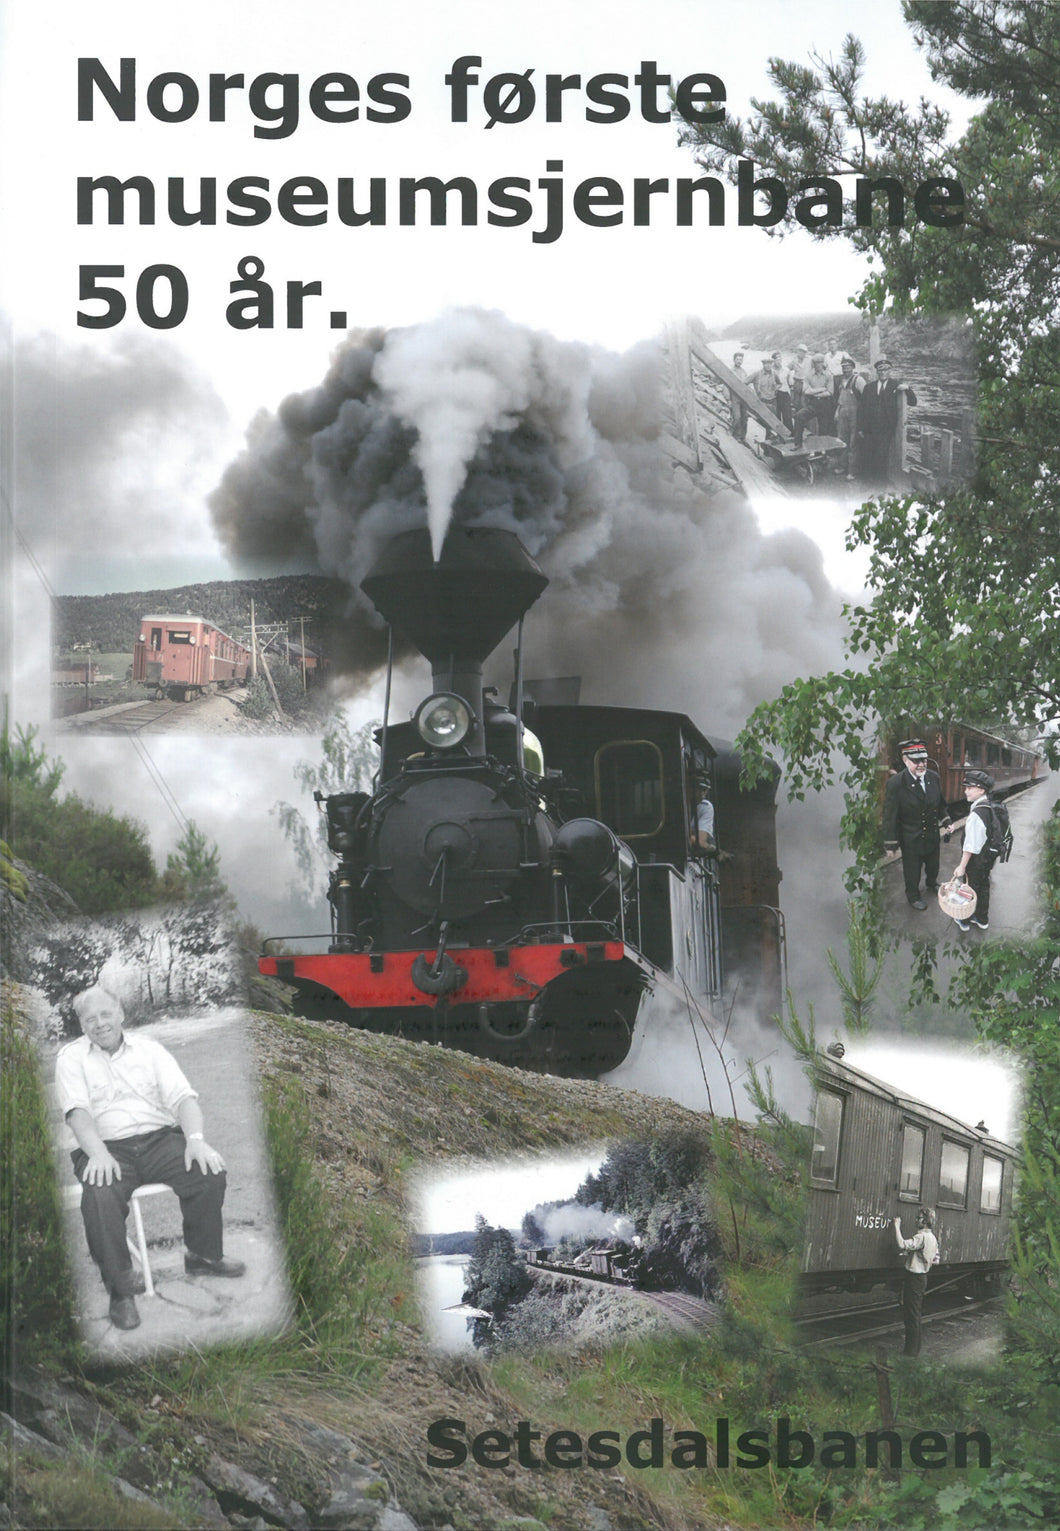 Setesdalsbanen - Norges første museumsjernbane 50 år